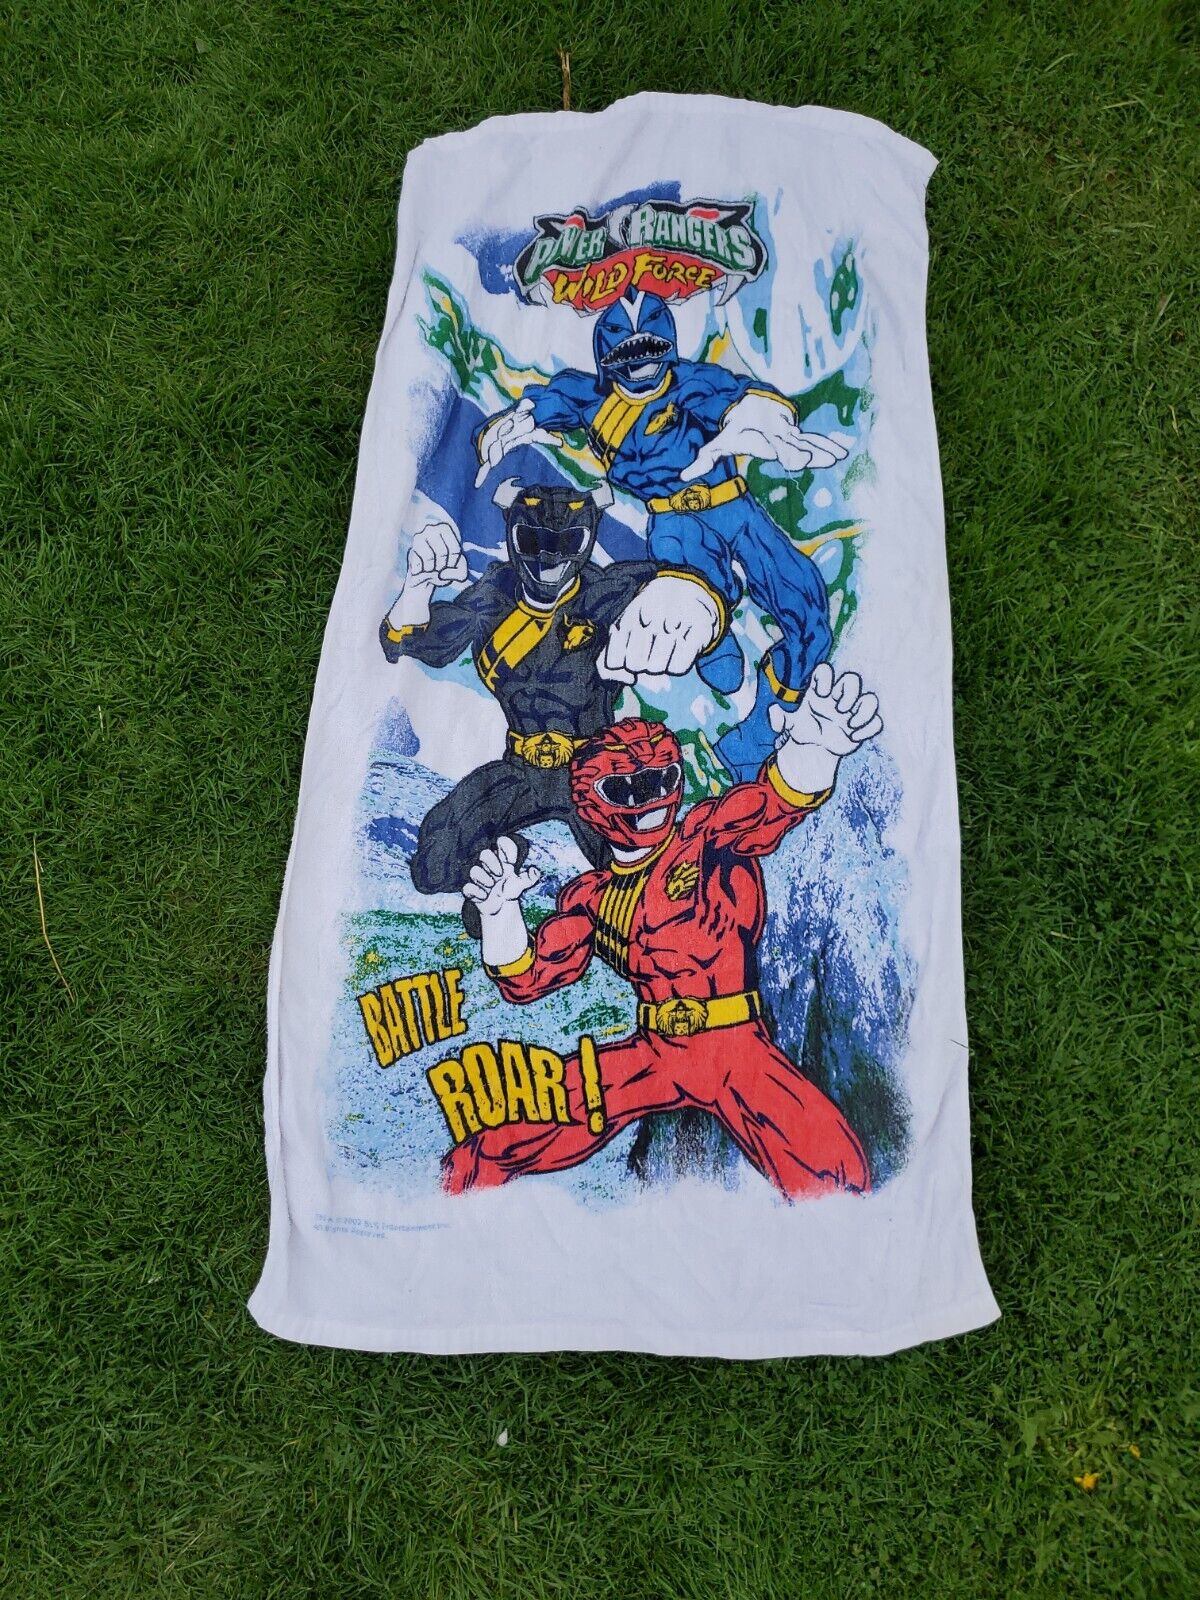 Vintage Franco Power Rangers Wild Force Battle Roar 2002 Beach Towel 52x24